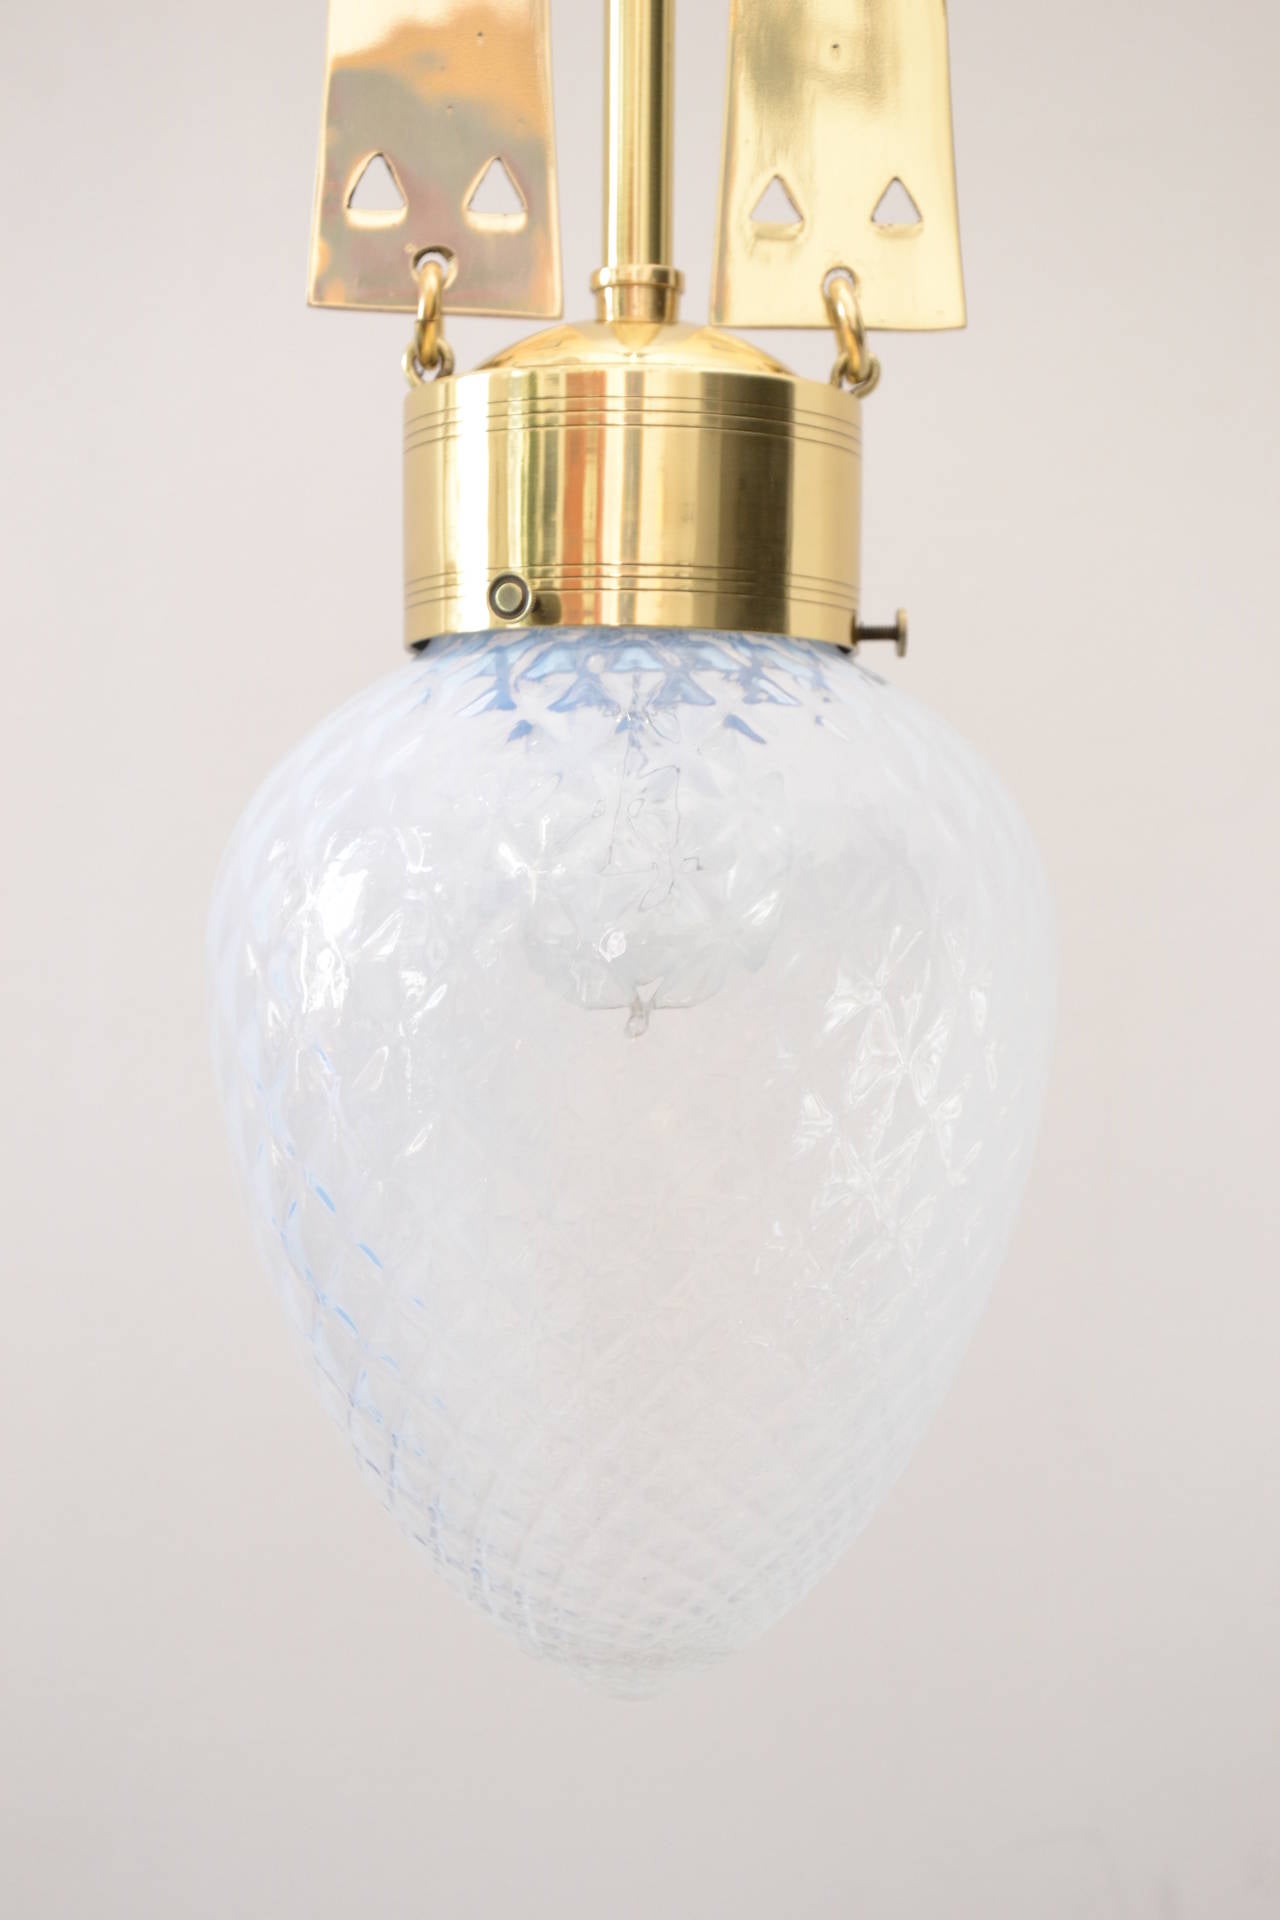 Jugendstil Brass Anteroom lamp and opaline glass